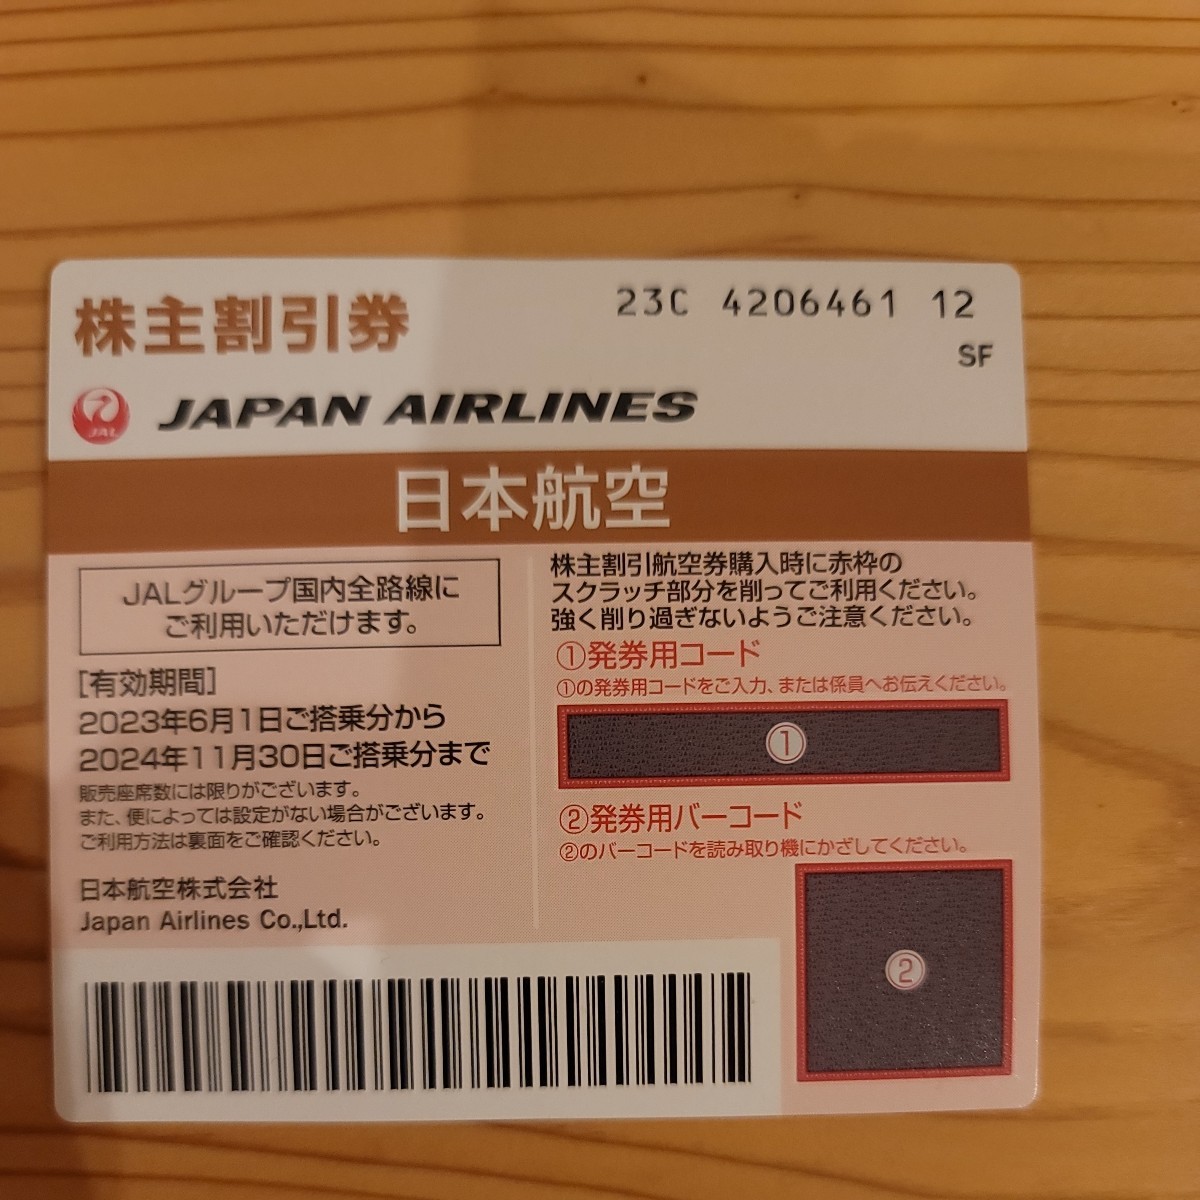 最安値挑戦 最安値 JAL フライト 国内線 交換可能なマイル 特典航空券 日本航空 株主優待